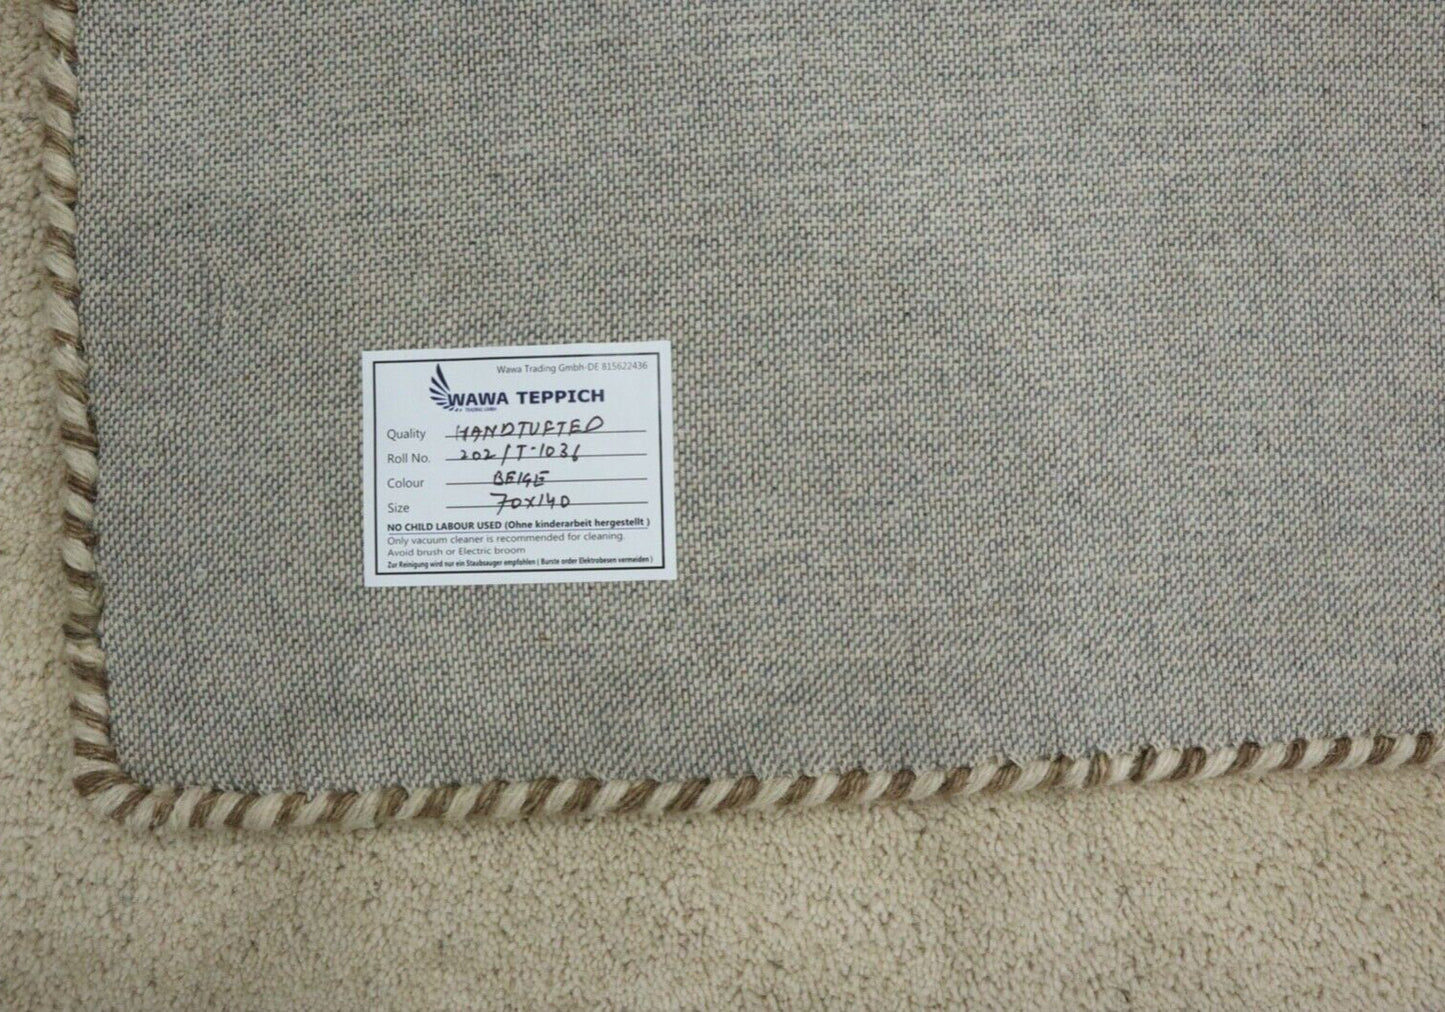 Gabbeh Teppich 100% Wolle 70X140 cm Handarbeit Beige Handgetuftet T1036